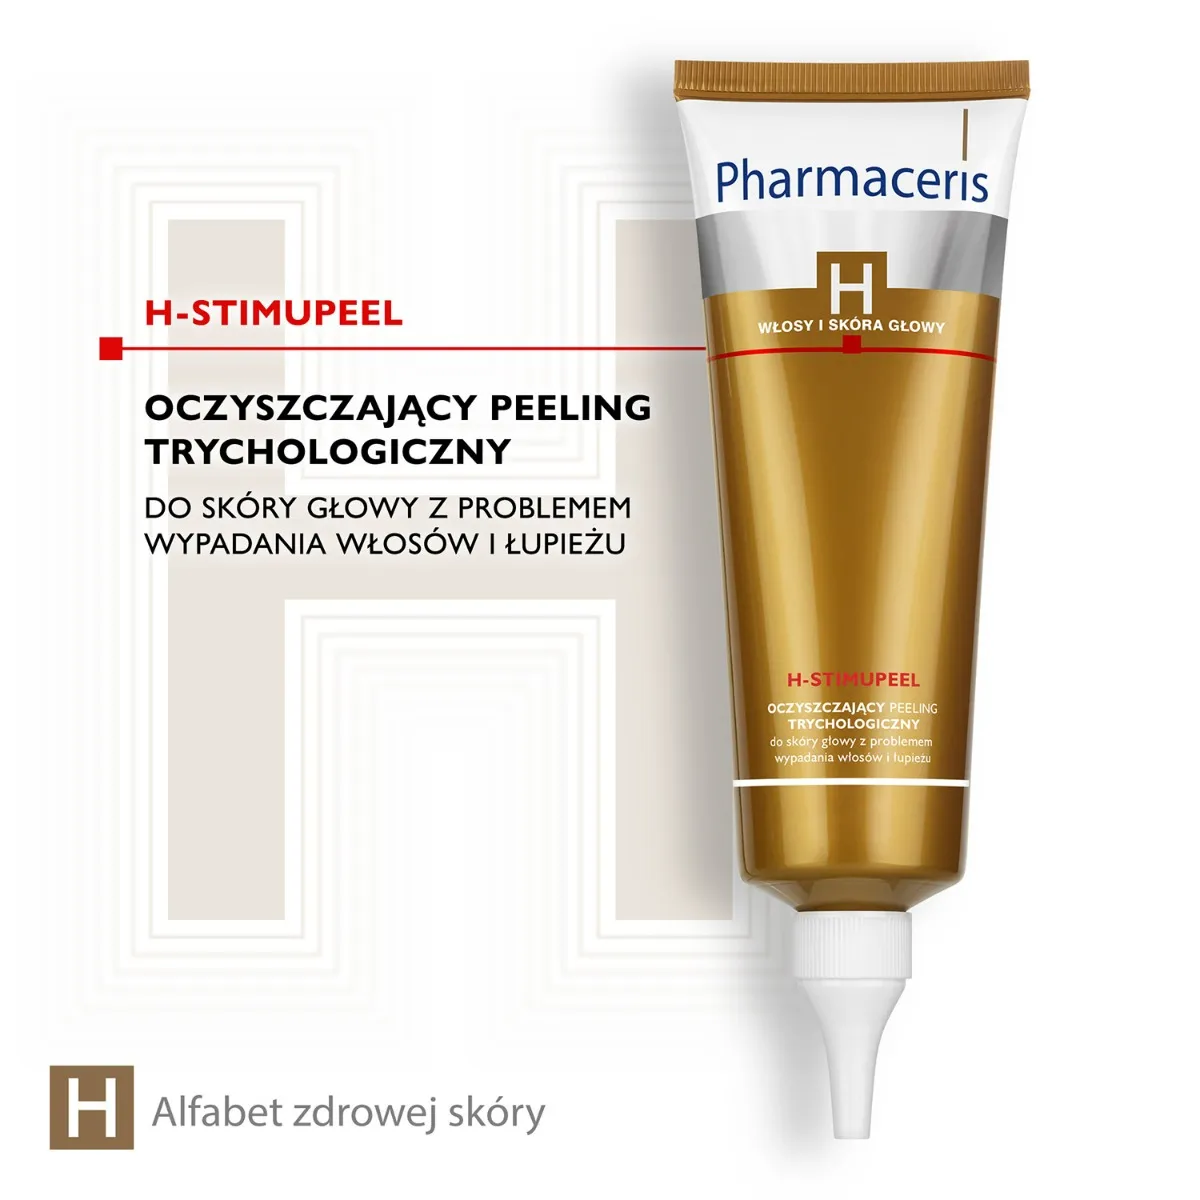 Pharmaceris H Stimupeel, oczyszczający peeling trychologiczny do skóry głowy, 125ml 